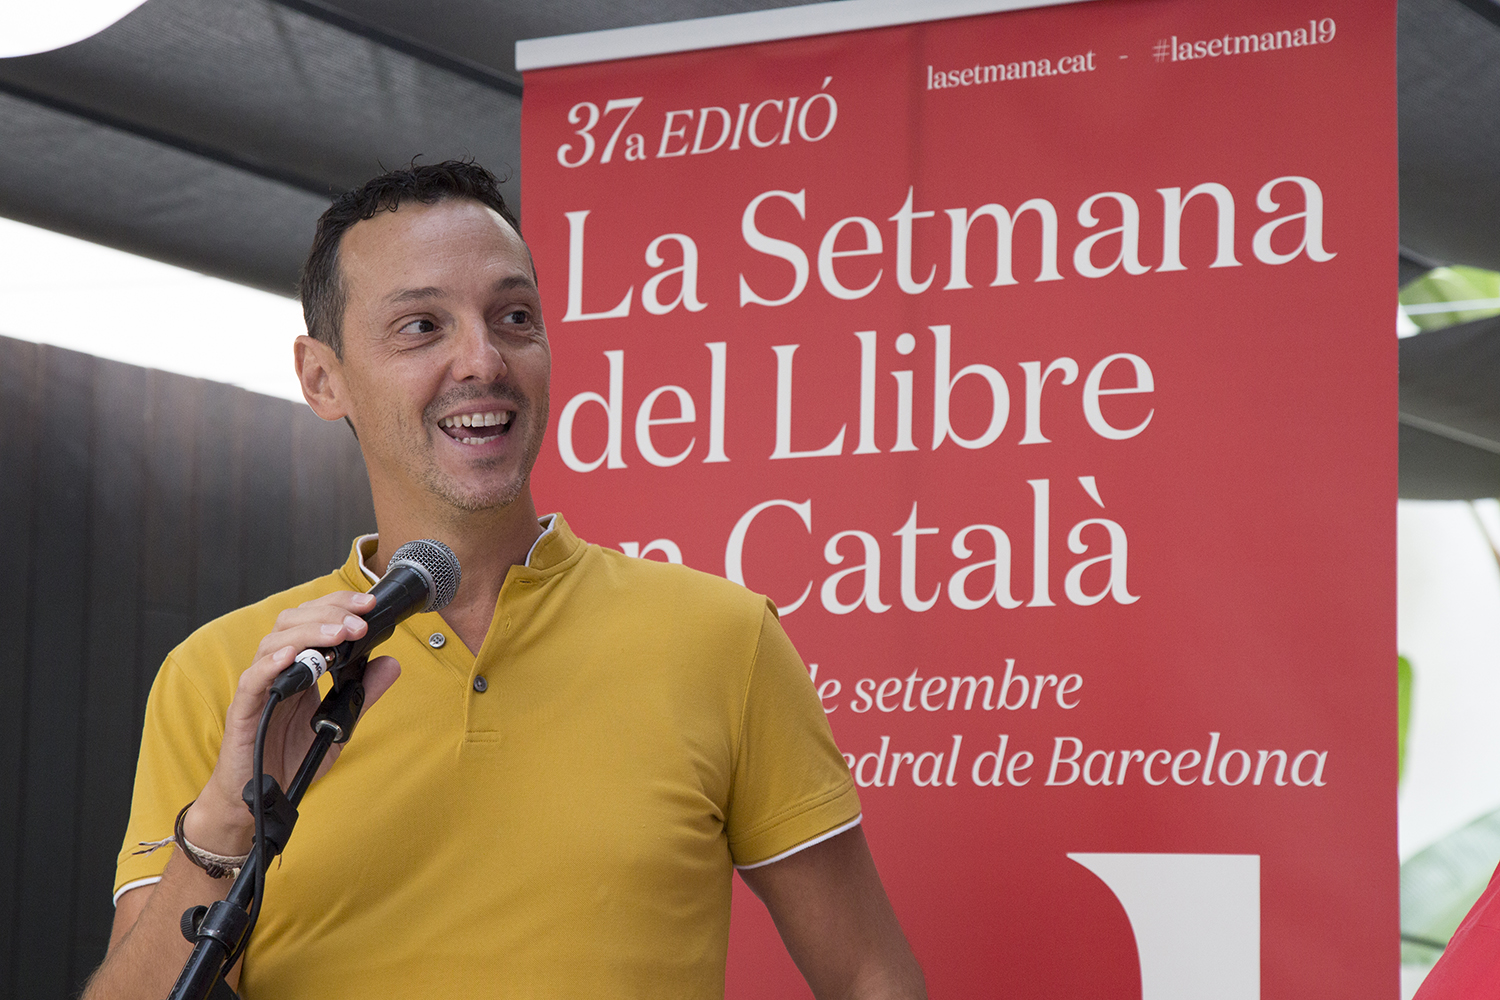 Joan Carles Girbés, director editorial dels segells de Som*, agafa el relleu de Joan Sala com a president de La Setmana del Llibre en Català